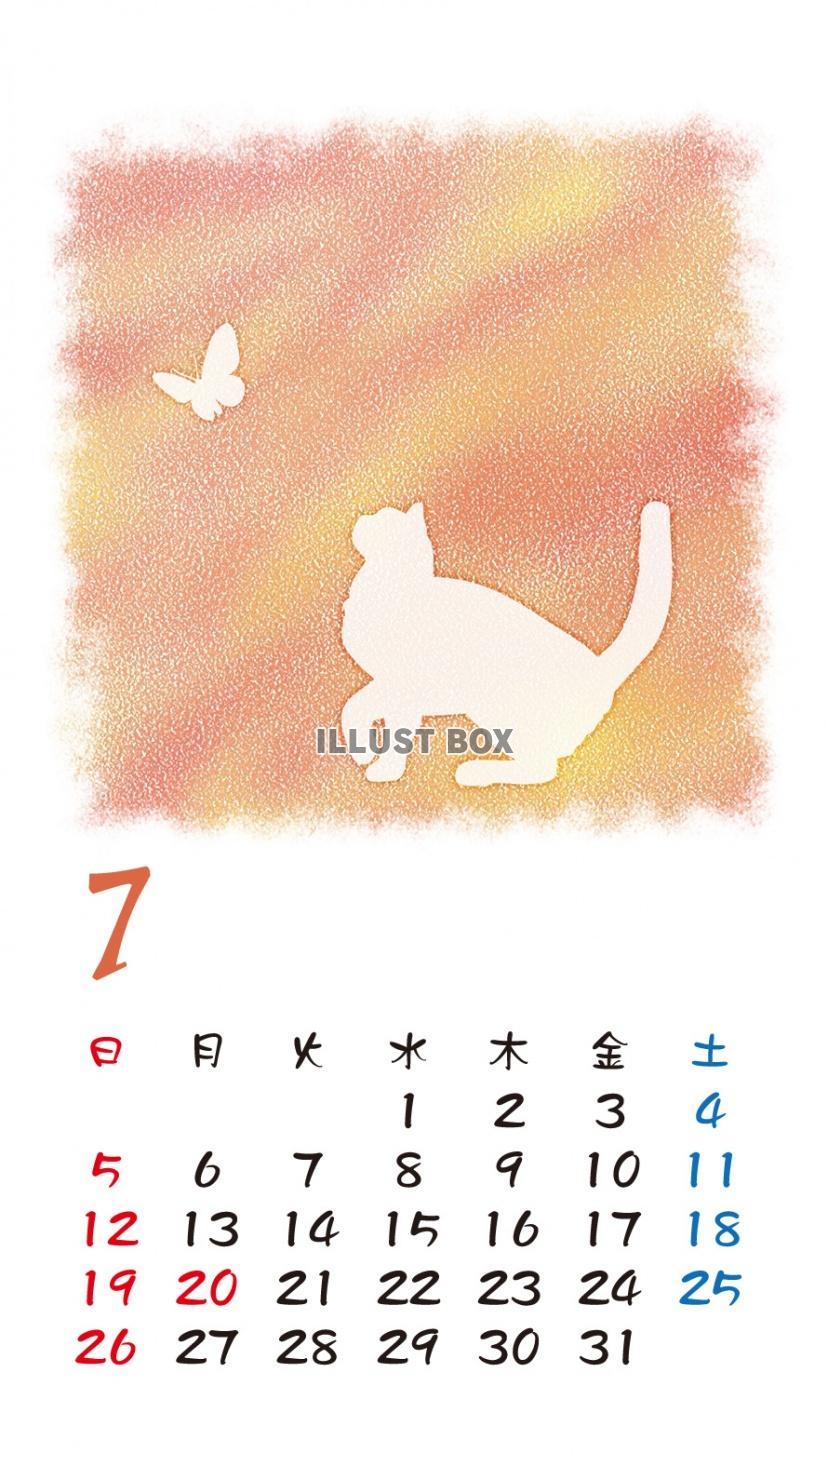 無料イラスト Iphone6用 カレンダー 猫シルエットパステル調 7月